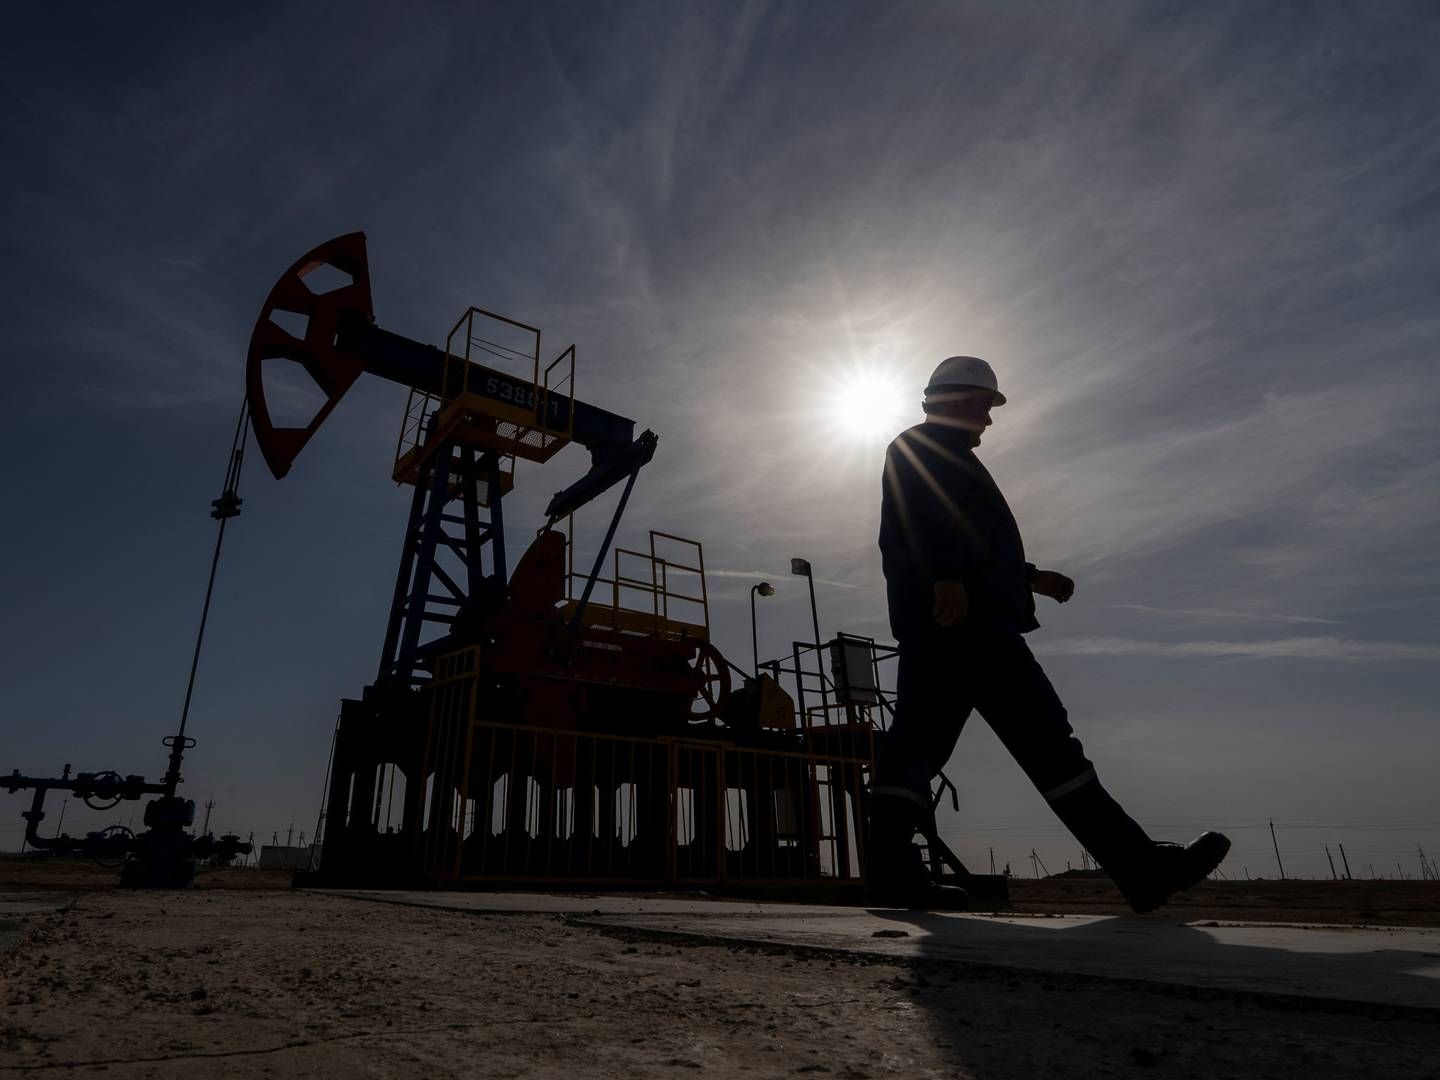 Udskydelsen af mødet skyldes ifølge nyhedsbureauet Reuters uenigheder mellem Saudi-Arabien og afrikanske olieproducenter om størrelsen af produktionsmålene. | Foto: Turar Kazangapov/Reuters/Ritzau Scanpix